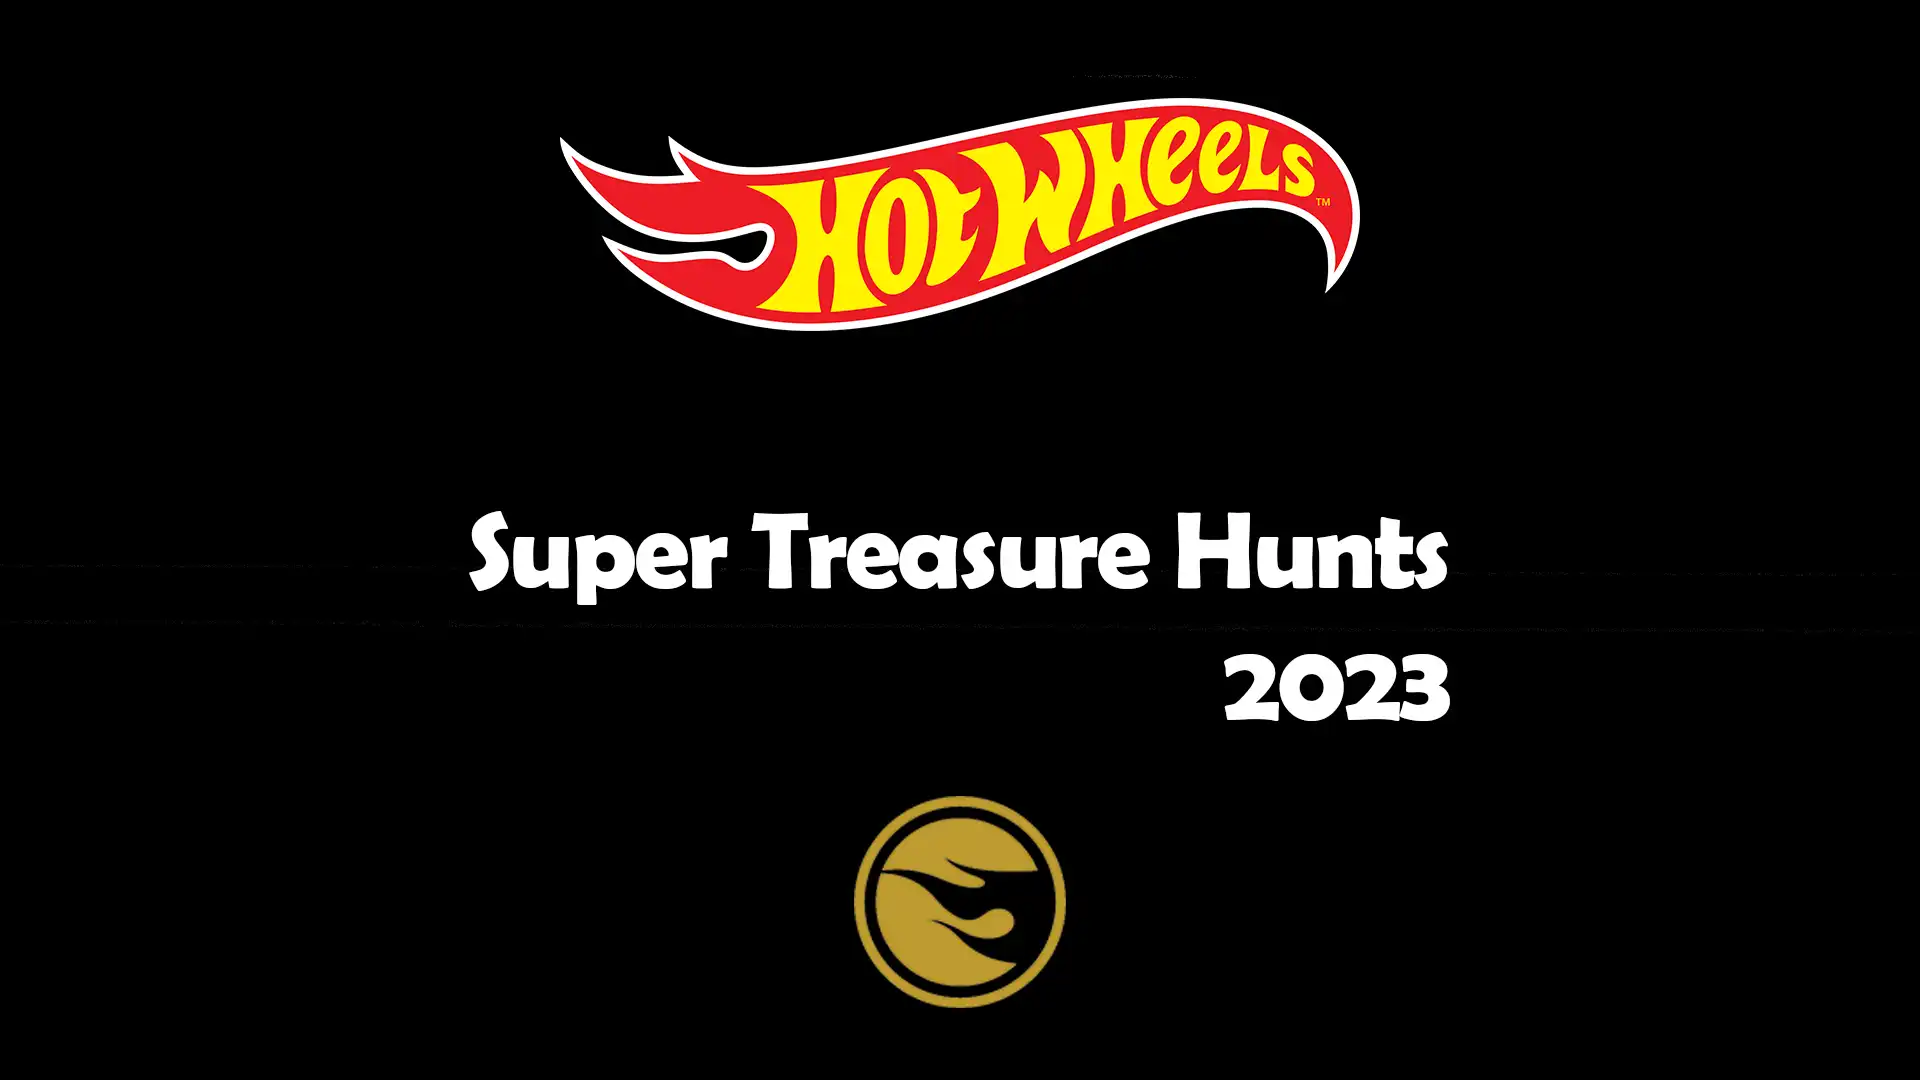 Super Treasure Hunts 2023